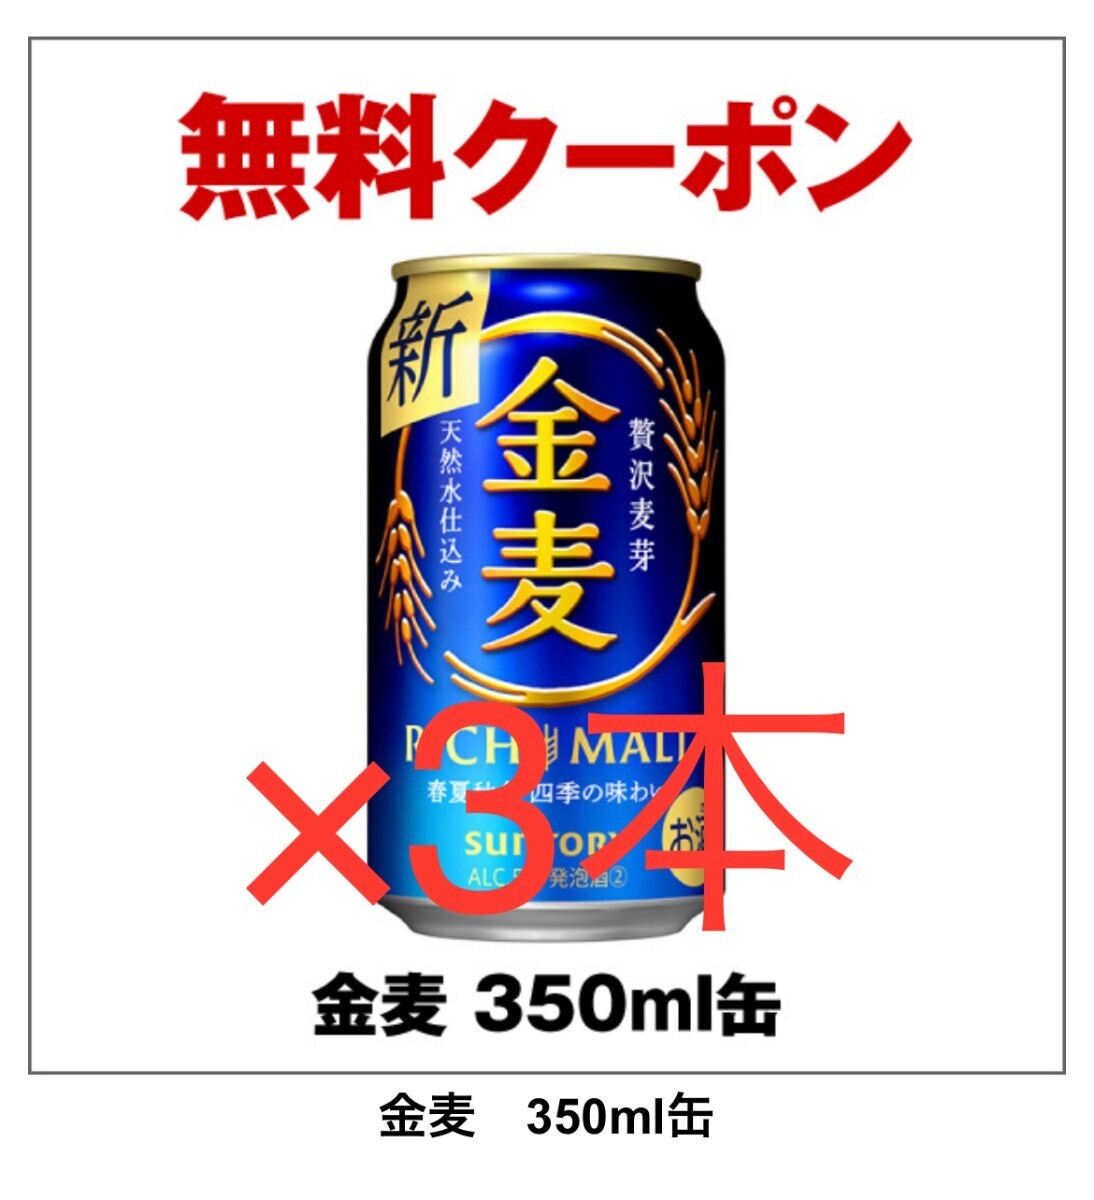  золотой пшеница seven eleven Suntory пиво супермаркет купон обмен 